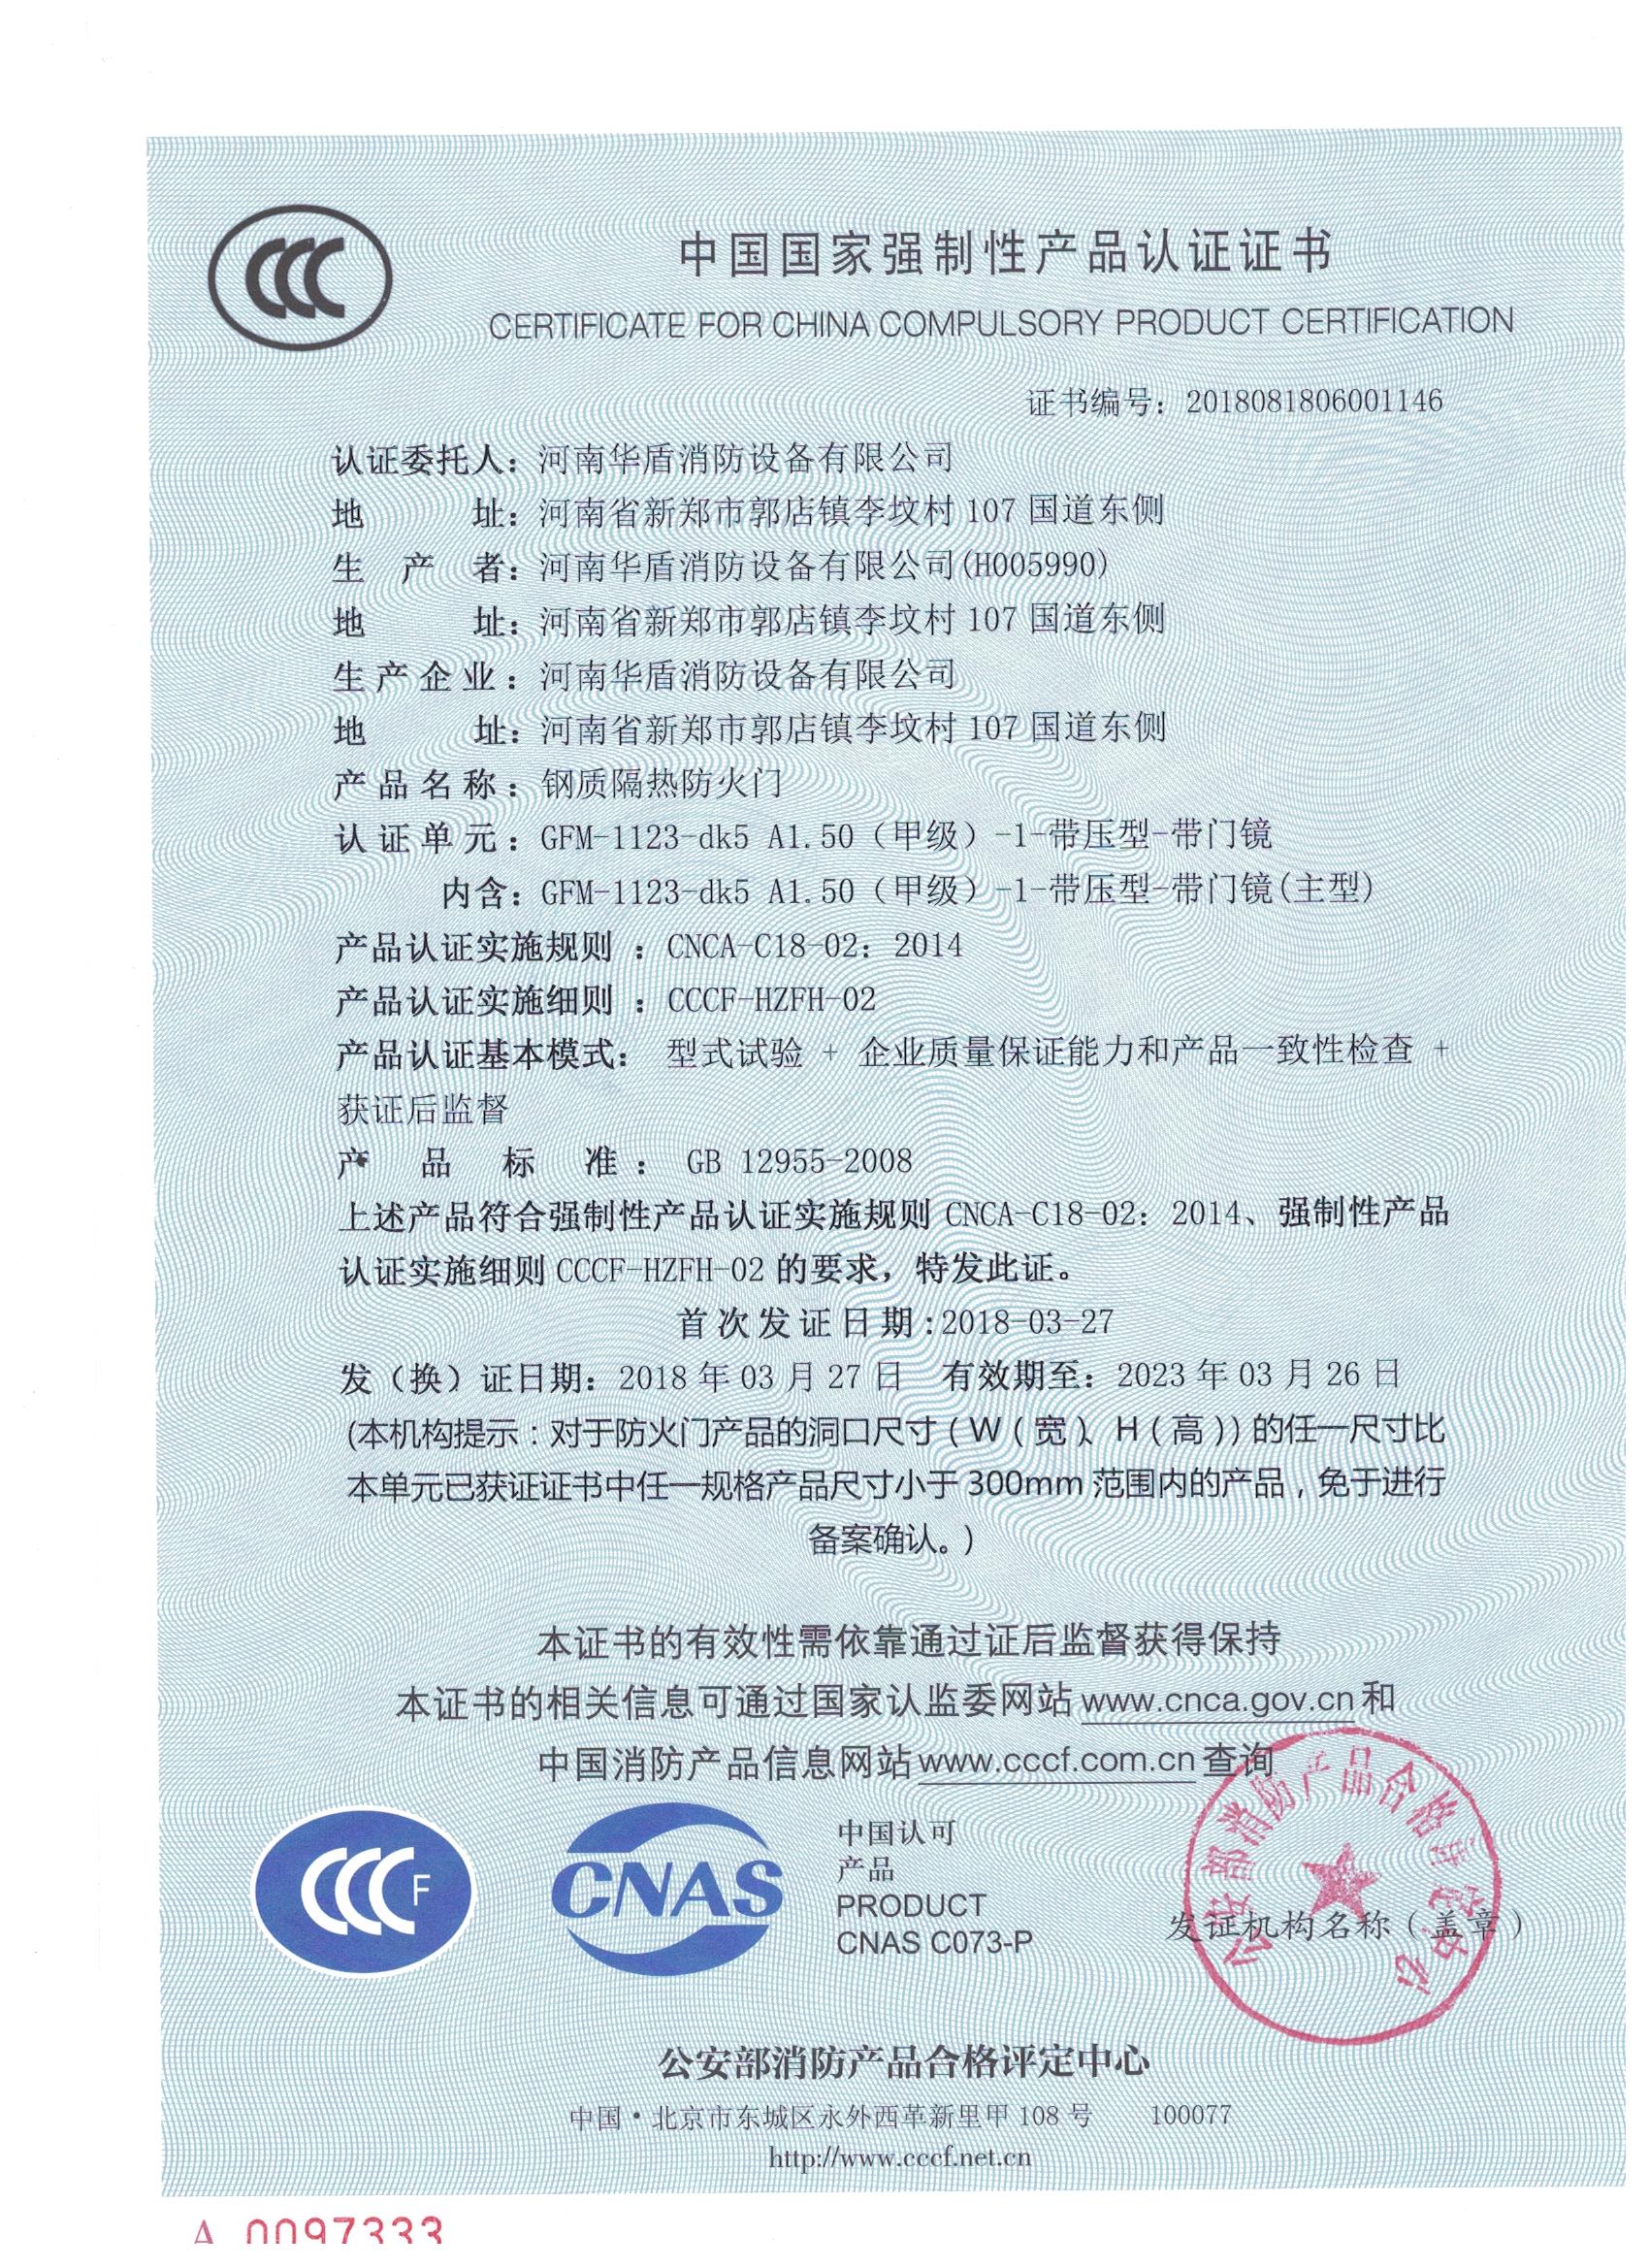 河南GFM-1123-dk5A1.50(甲级）-1-3C证书